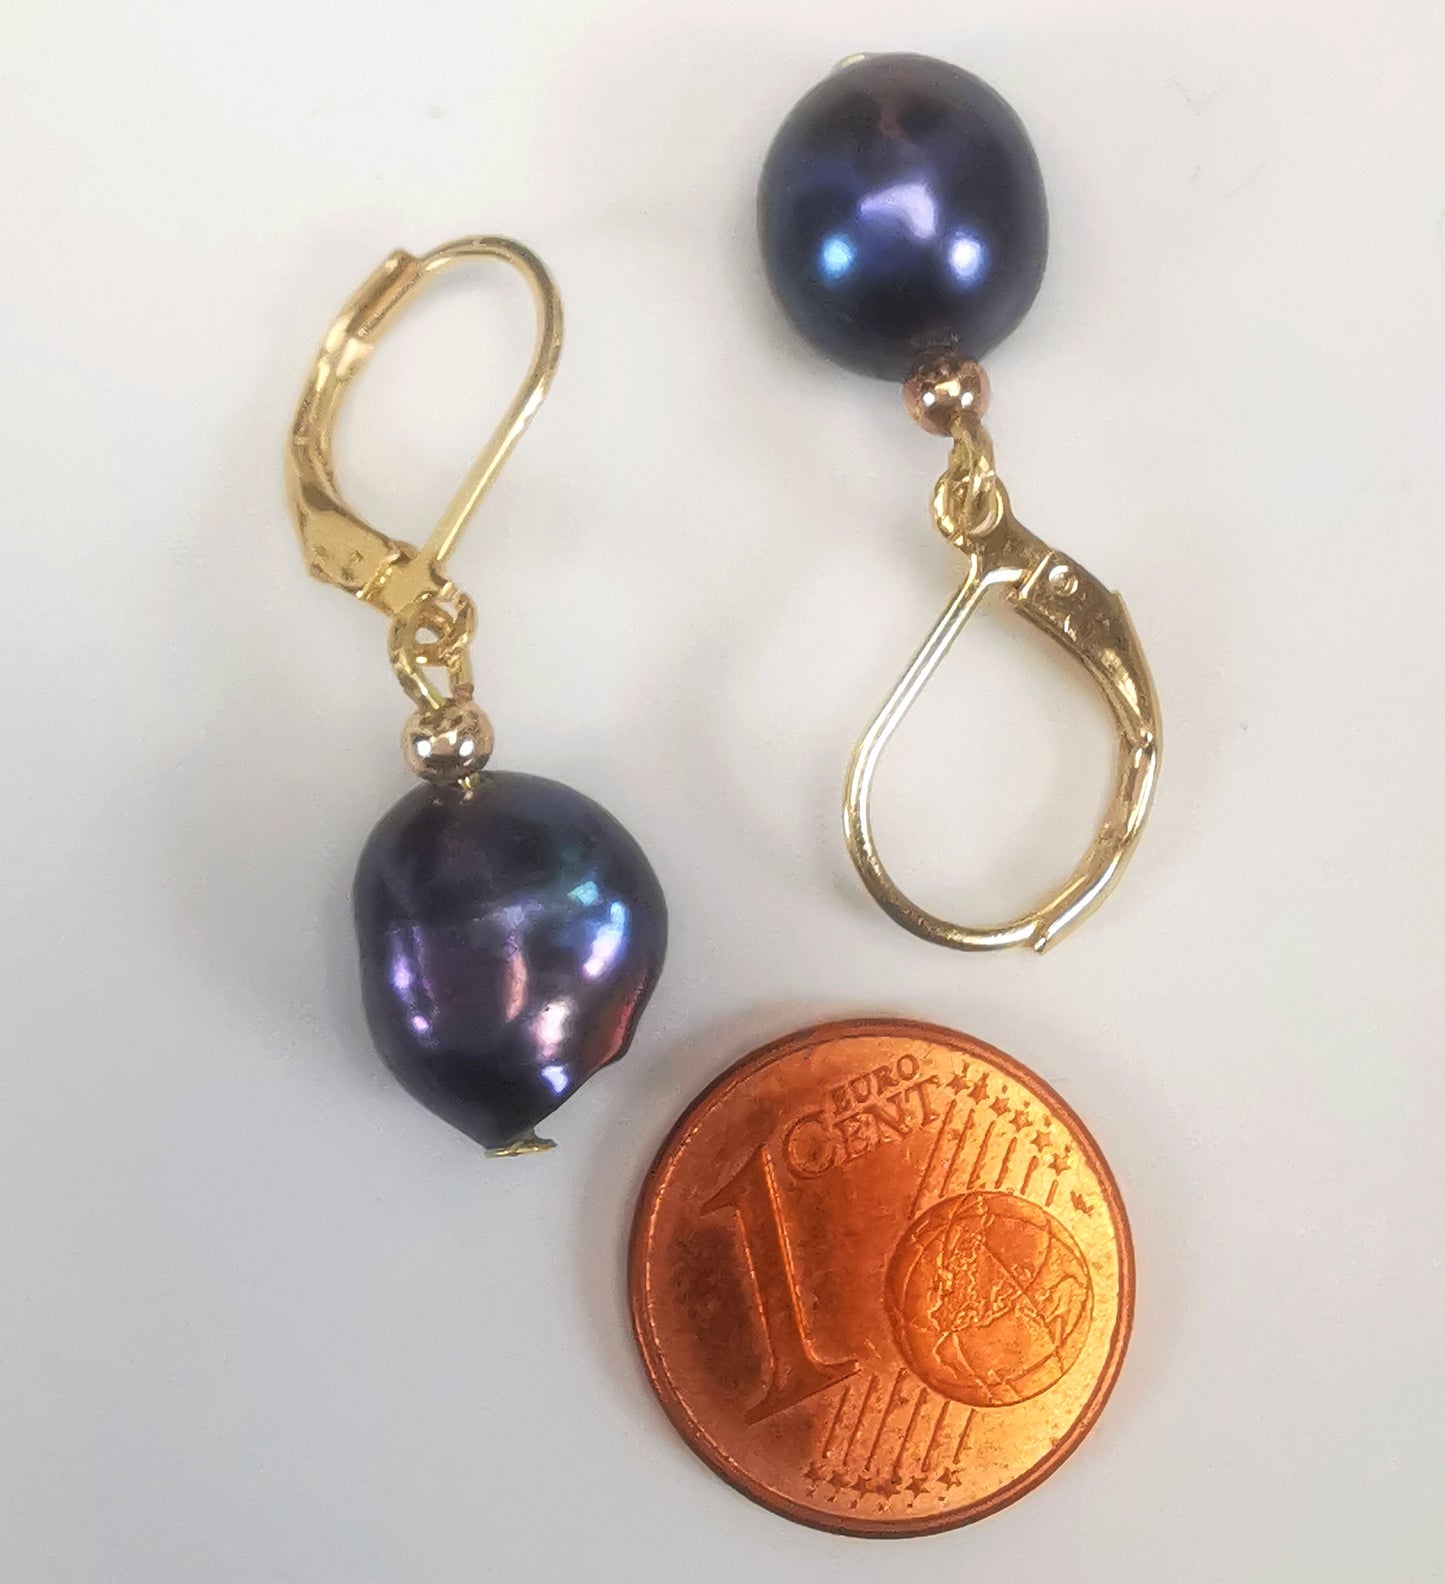 Boucles d'oreilles perles de culture noires baroques 10-12mm montées sur dormeuses plaquées or. Présentées cote à cote, têtes bèches, boucle de droite perles en bas, celle de gauche perle en haut, au dessus d'une pièce de 1 centime, sur un fond blanc. Vue de dessus.